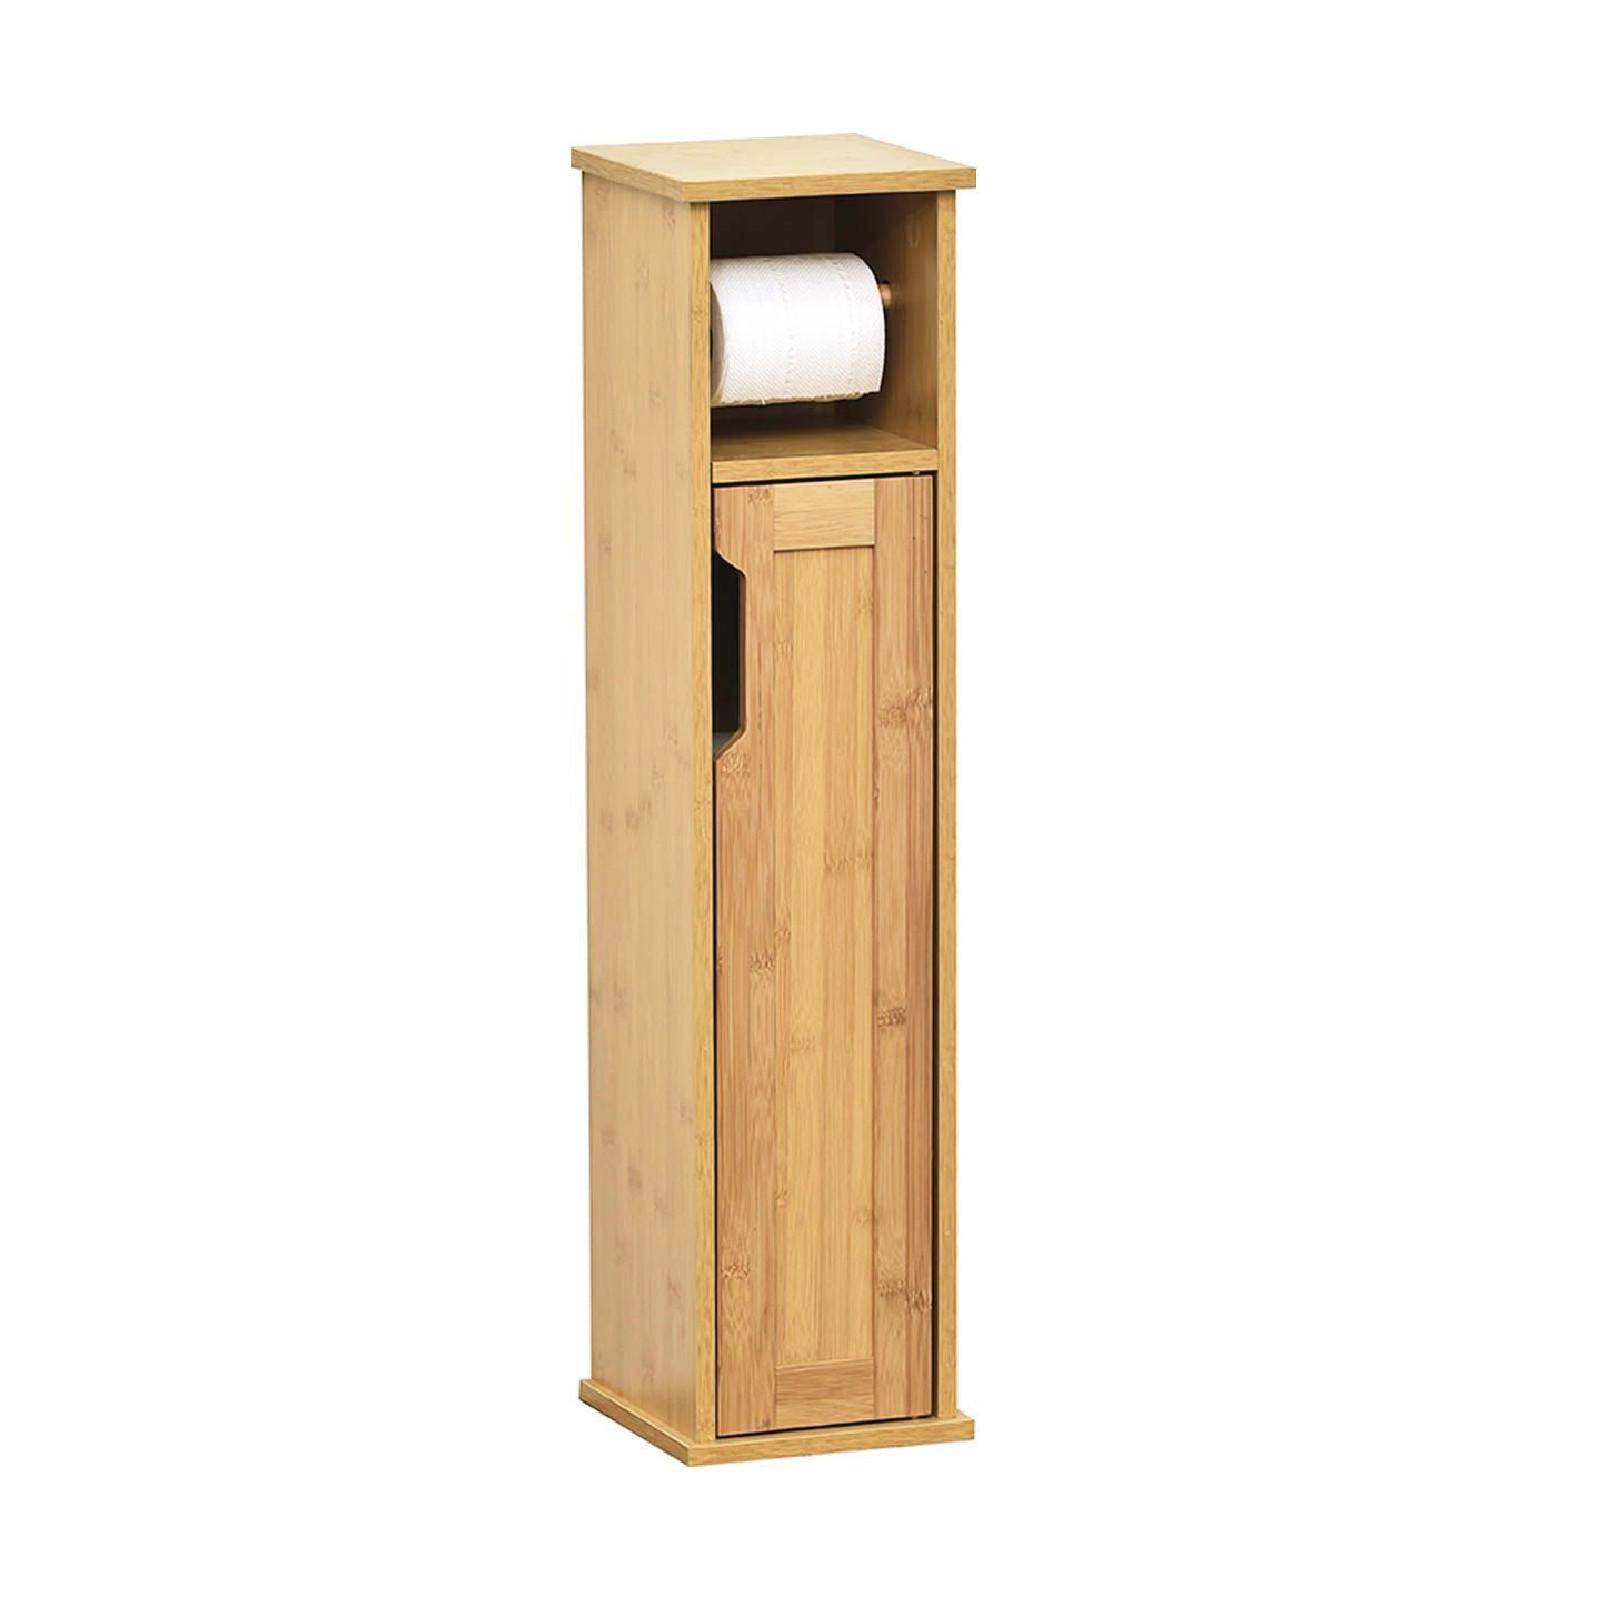 Mobiletto portarotolo in legno di bambu con anta e scaffali interni - Mahe